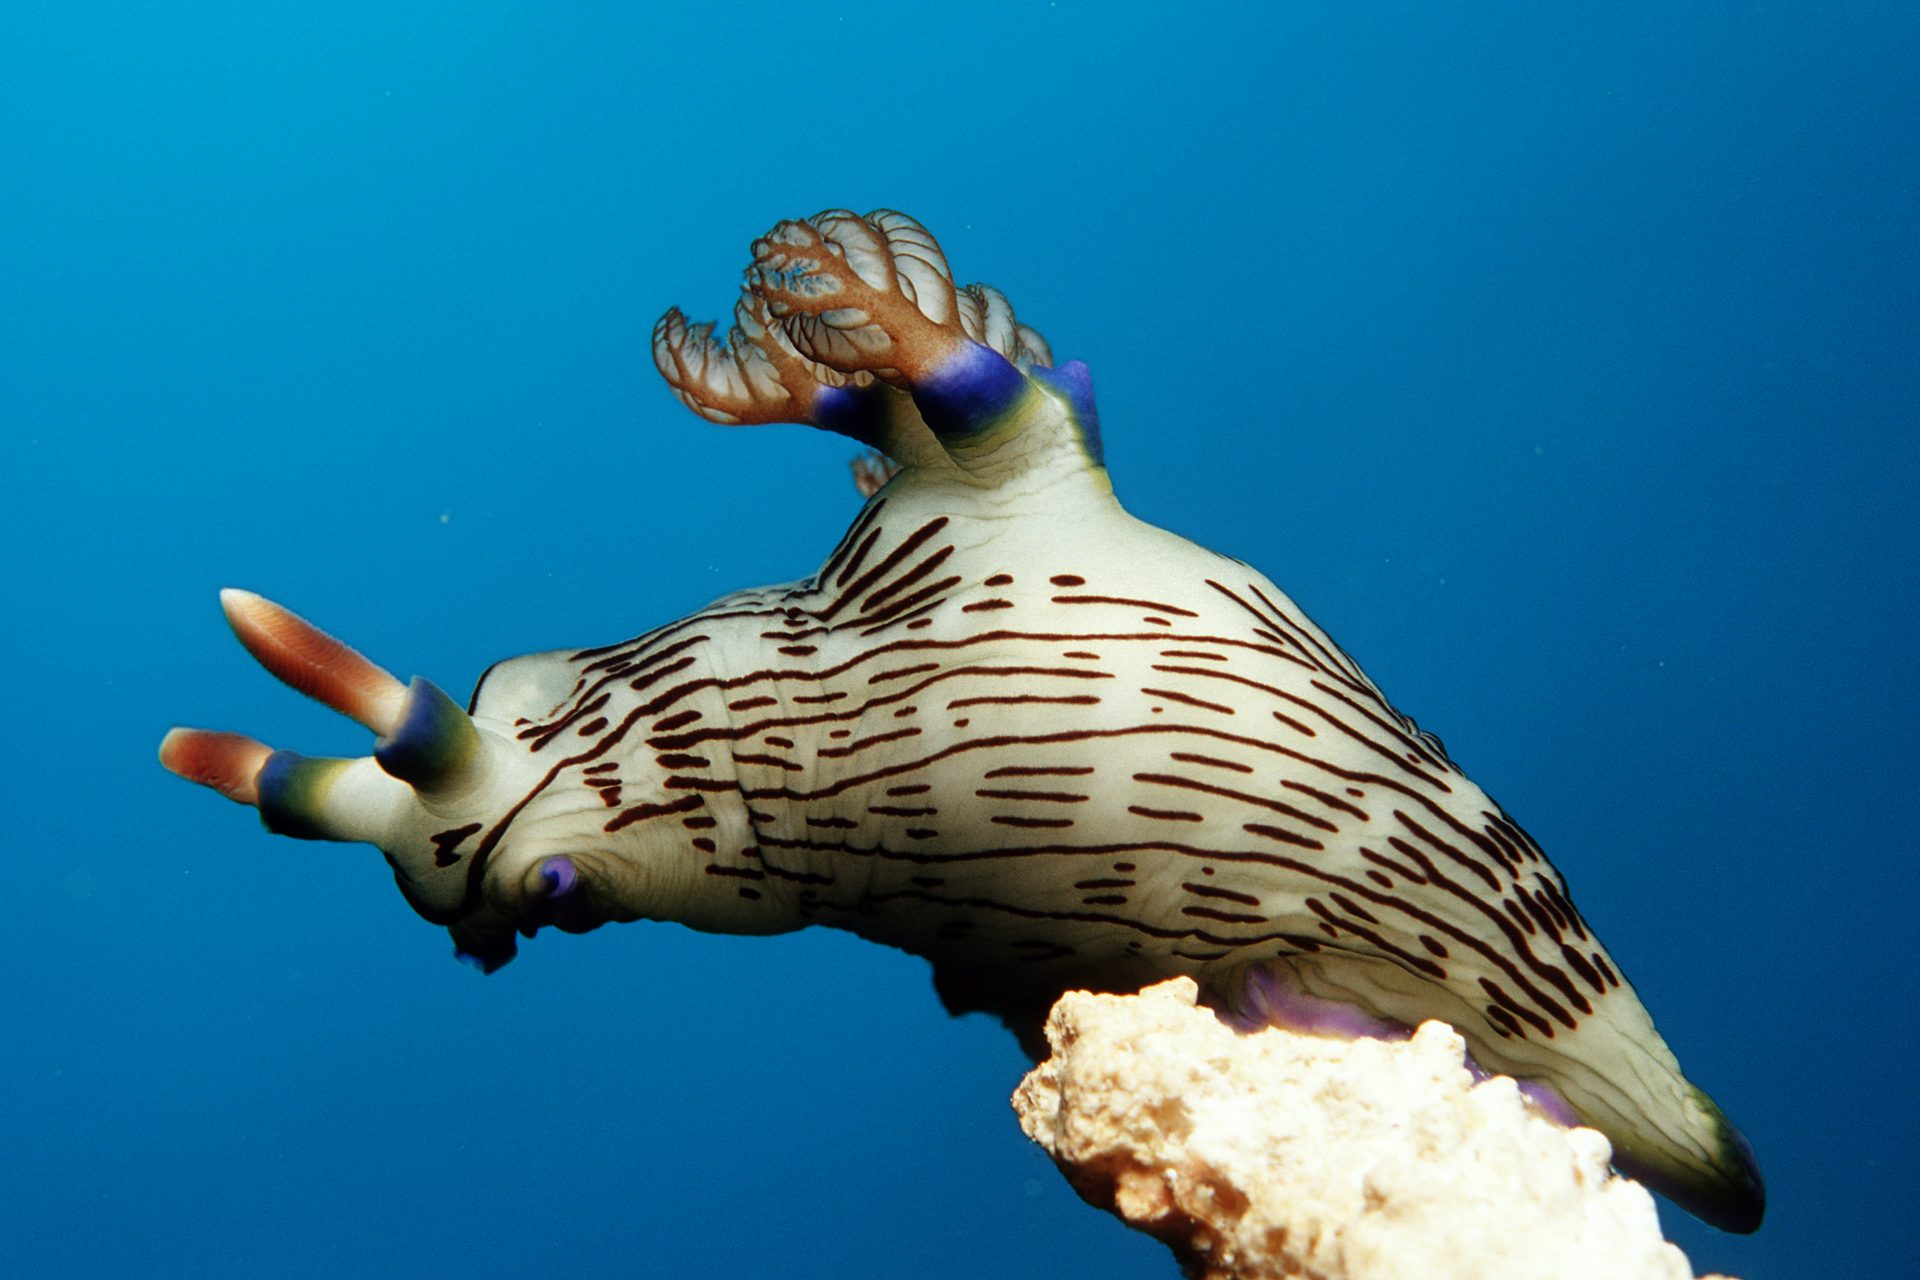 Black-striped sea slug